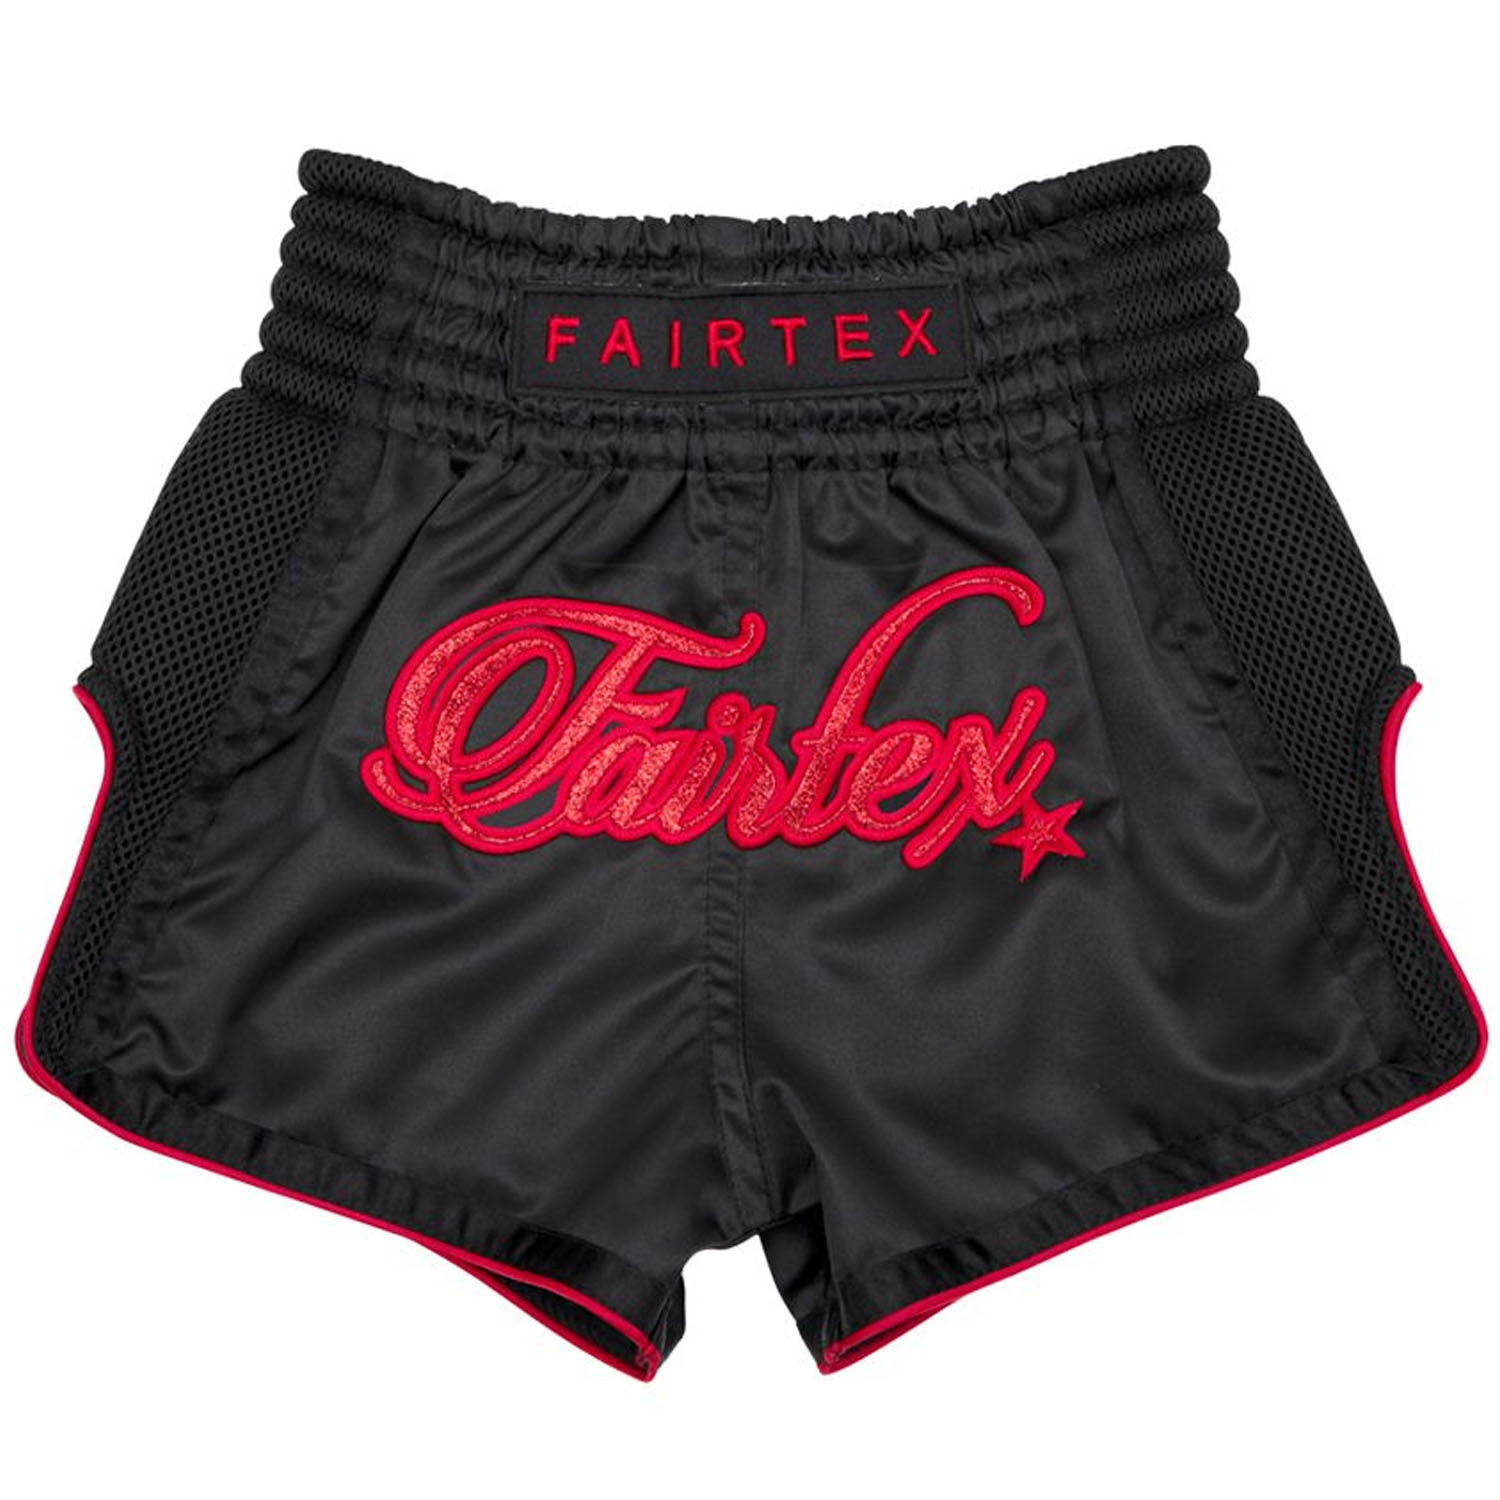 Fairtex Muay Thai Shorts, Kids, BSK2104, black-red, S